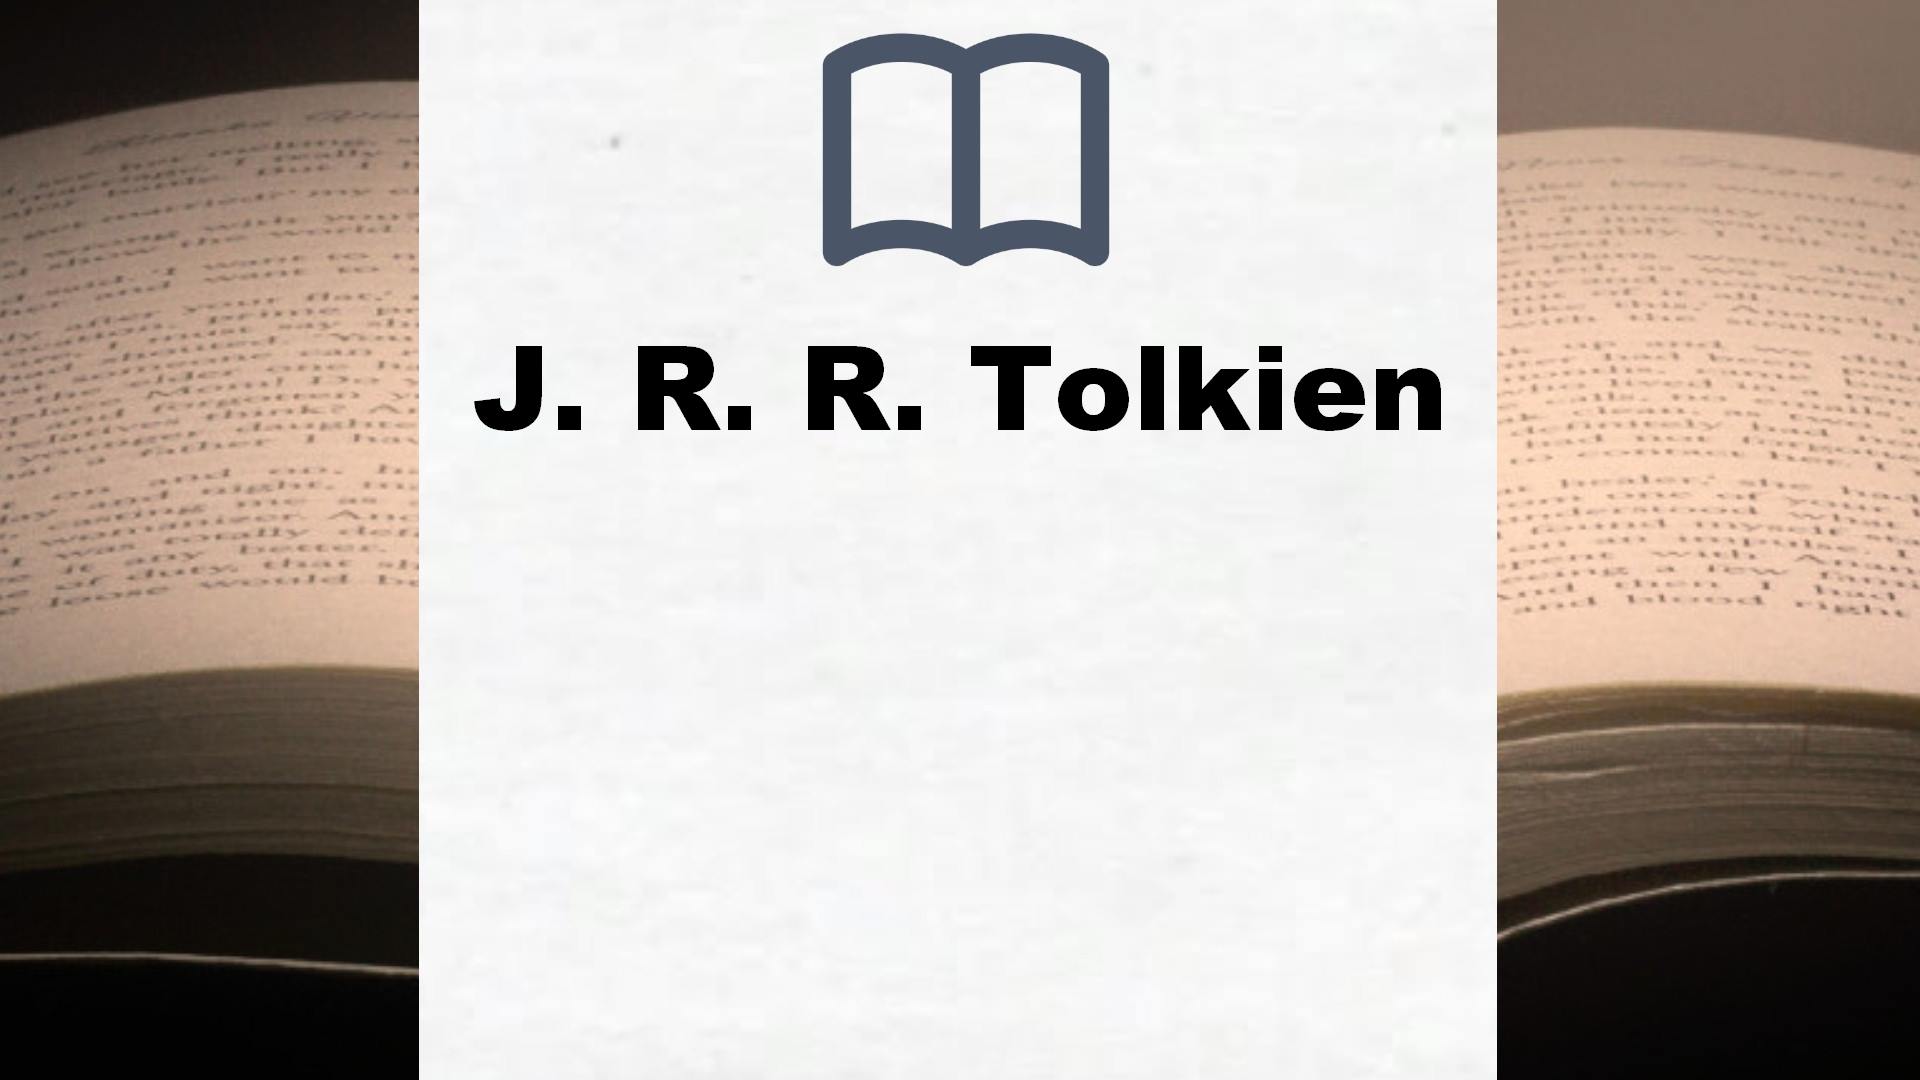 Libros J. R. R. Tolkien